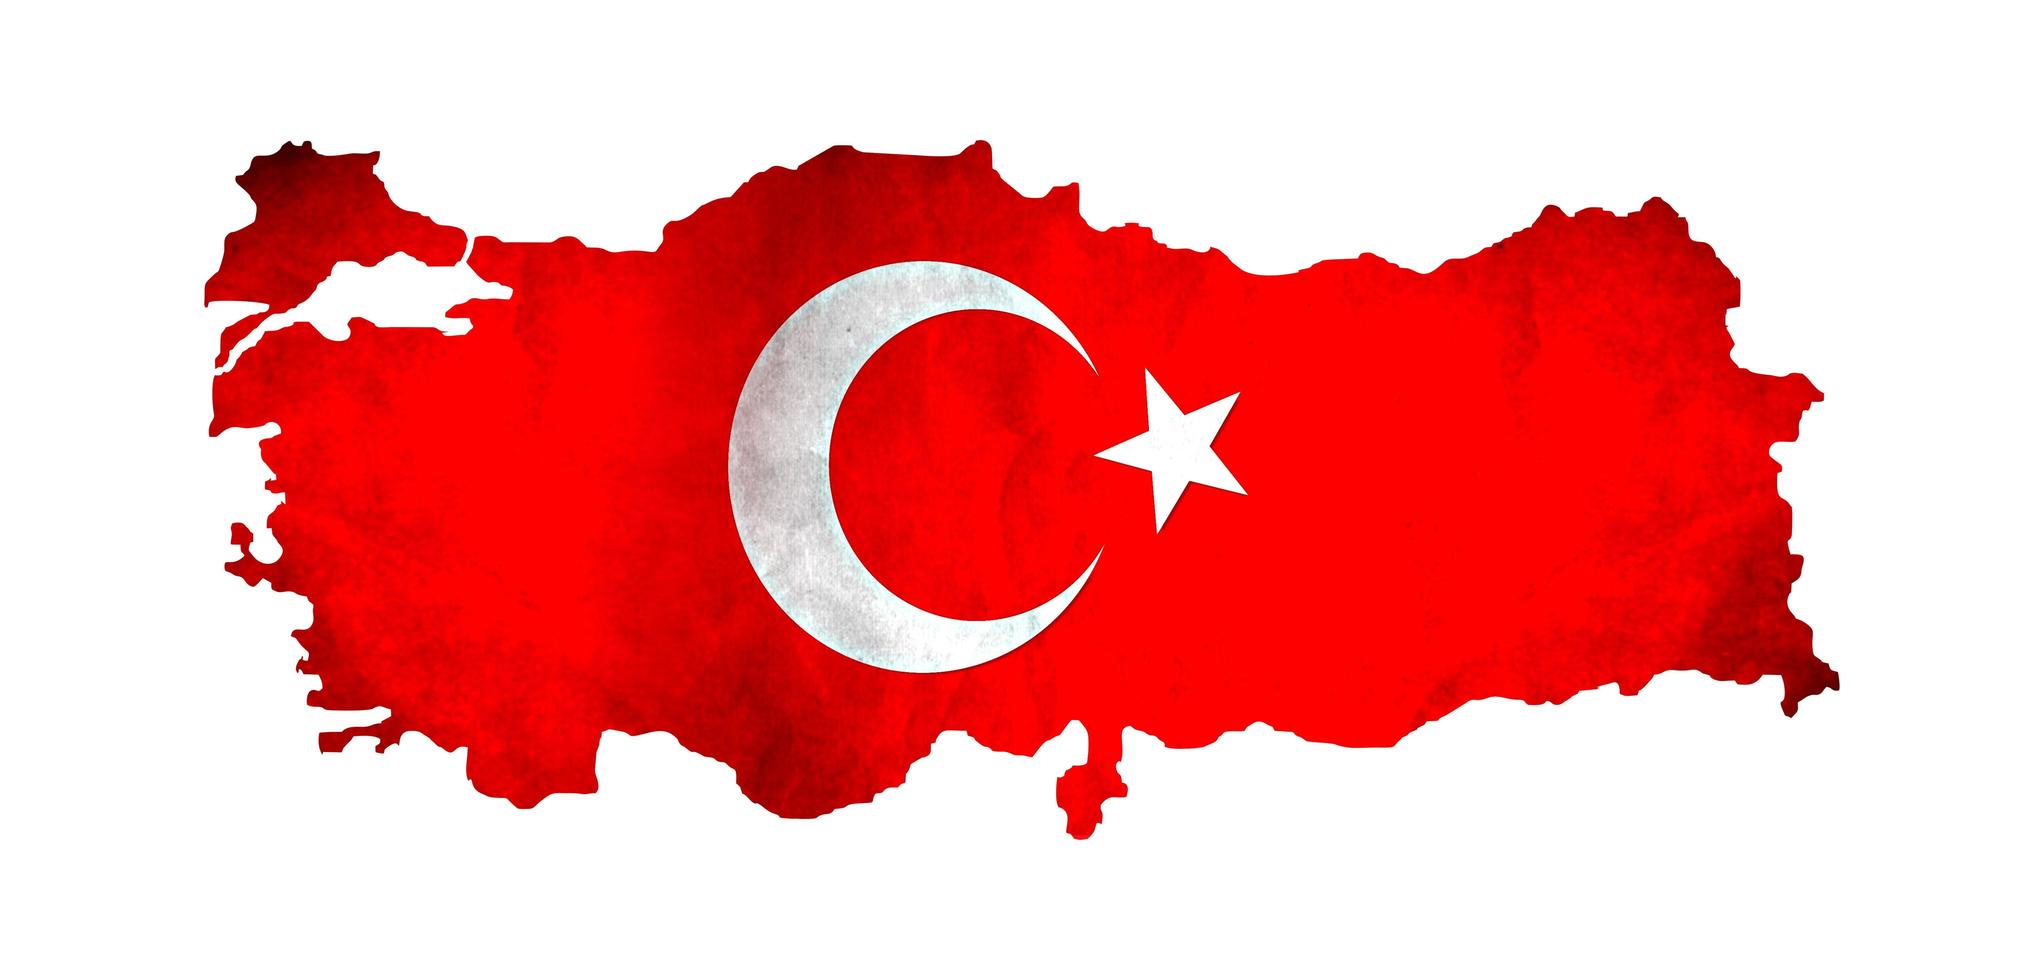 Mapa de Turquía y símbolos de la bandera nacional, fondo blanco. foto